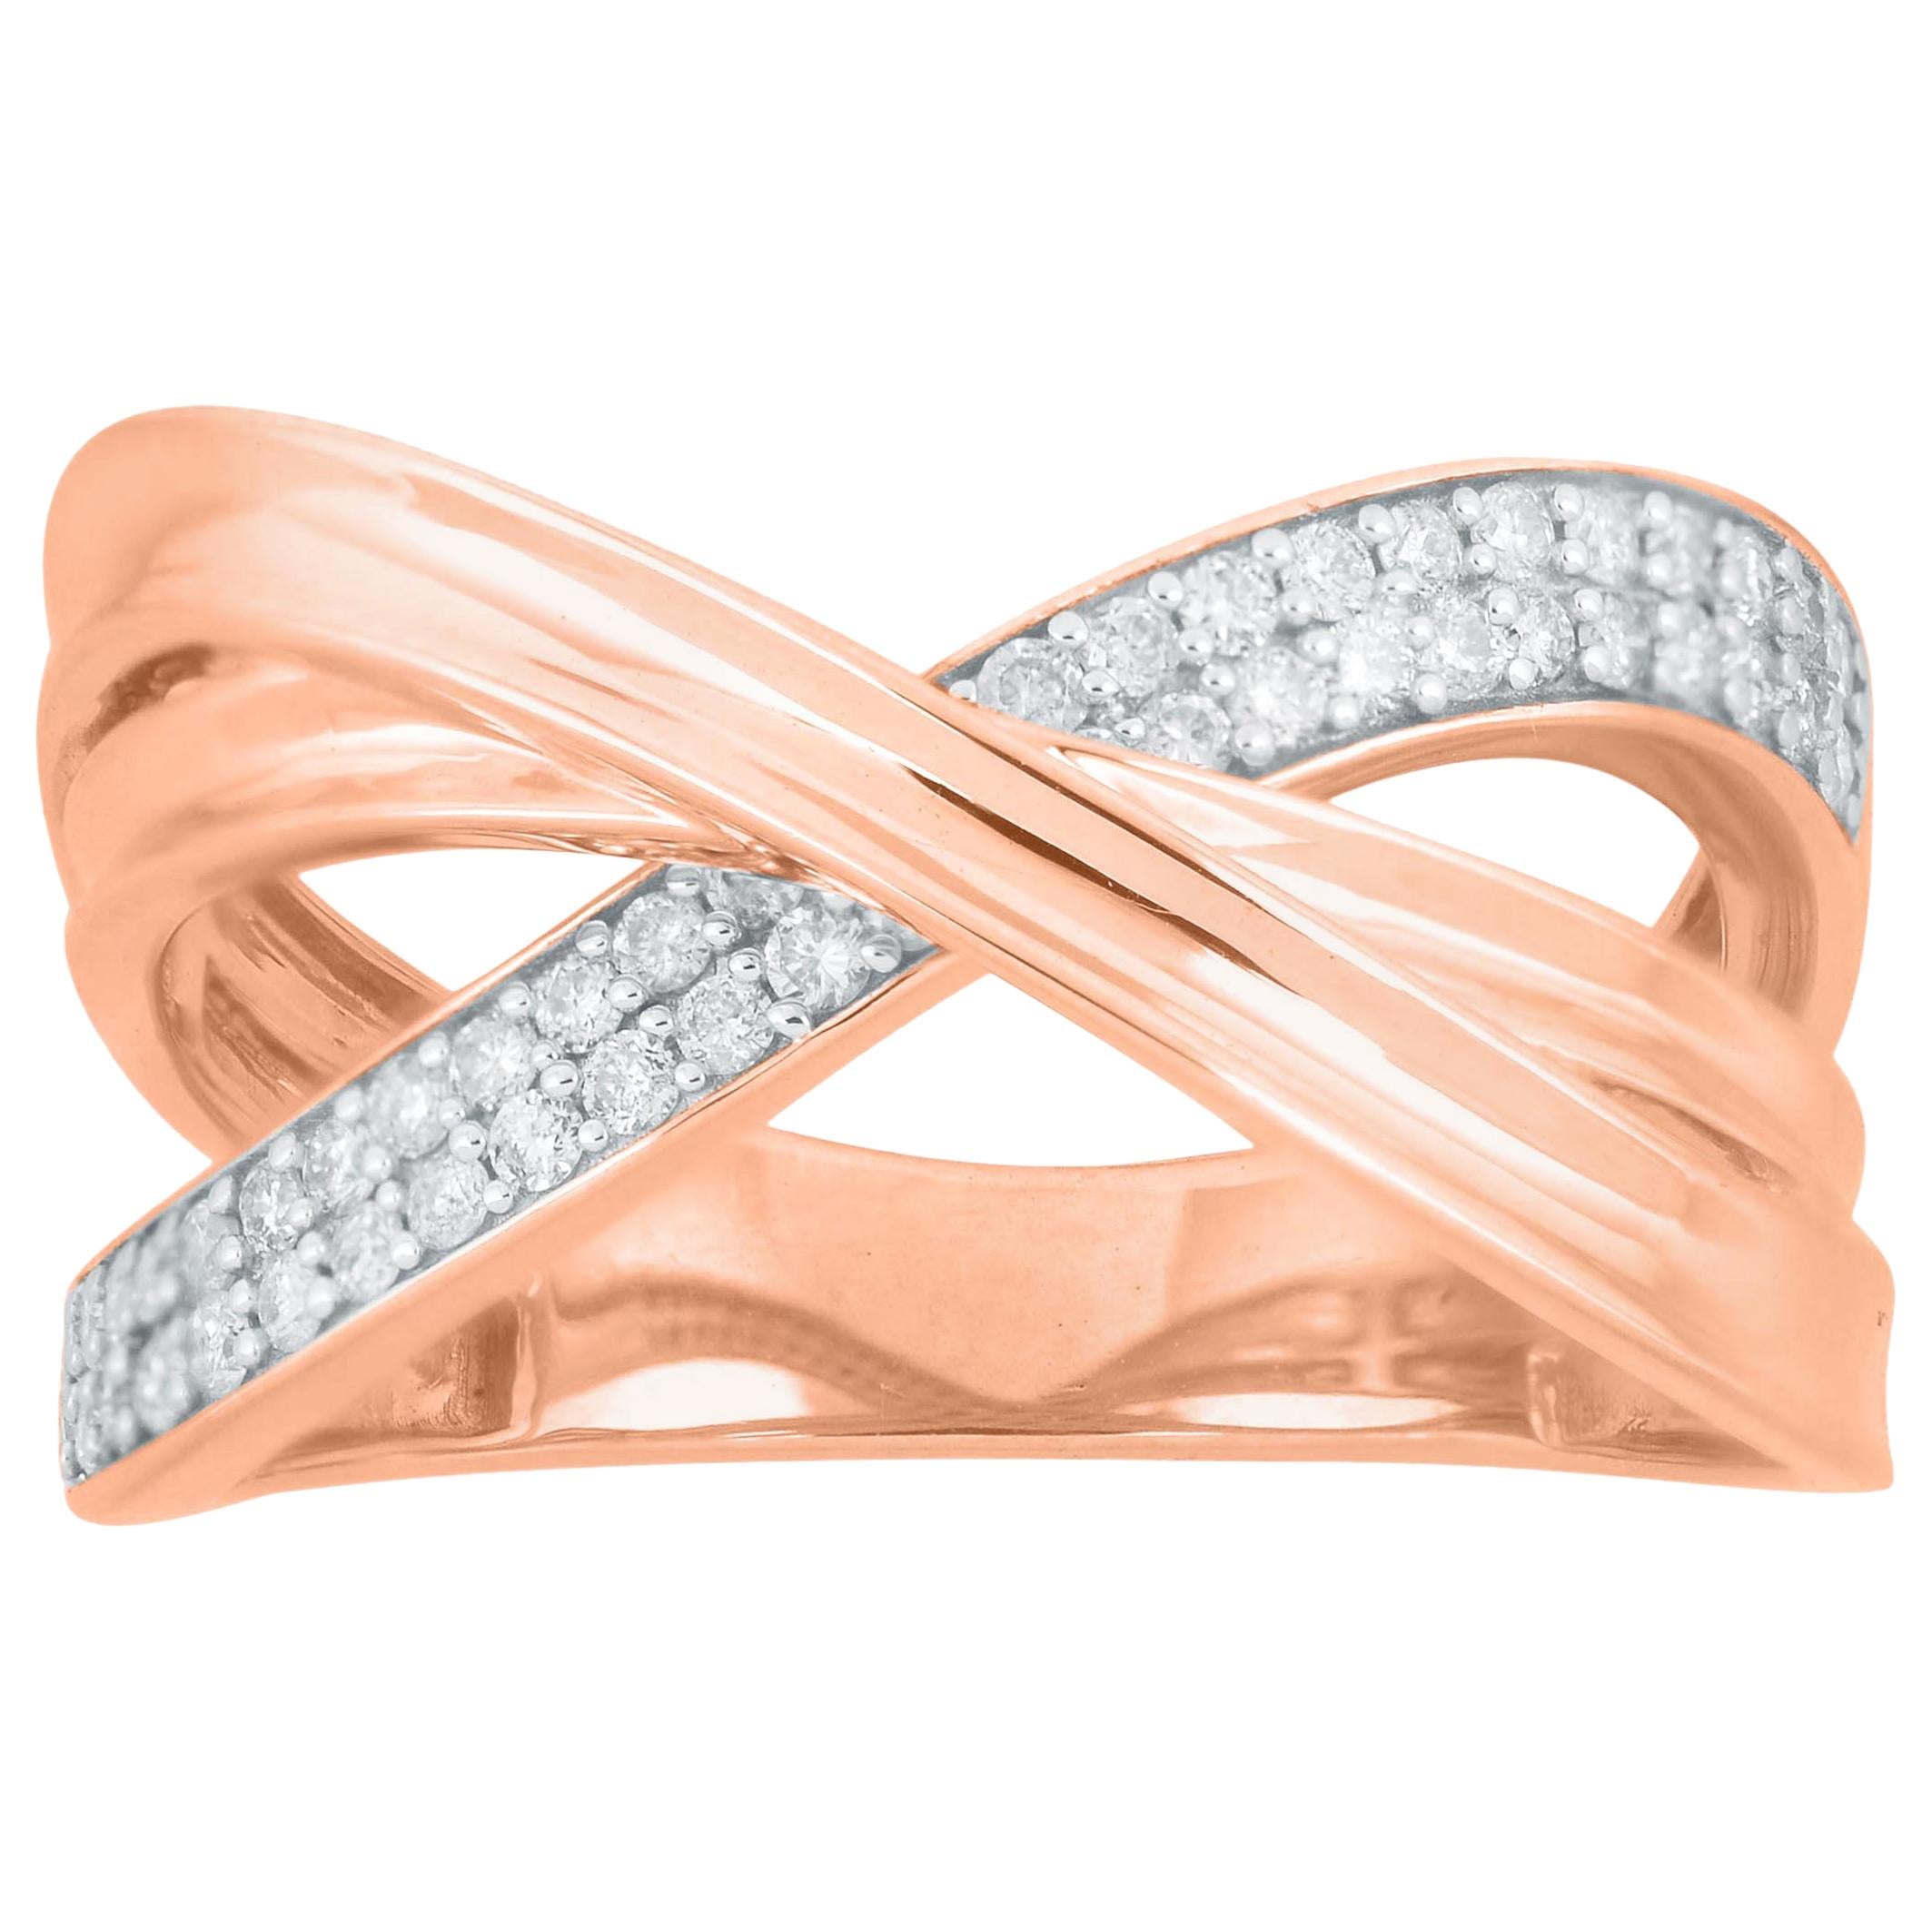 TJD 0.33 Carat Round Diamond 14 Karat Rose Gold Crossover Wedding Band Ring